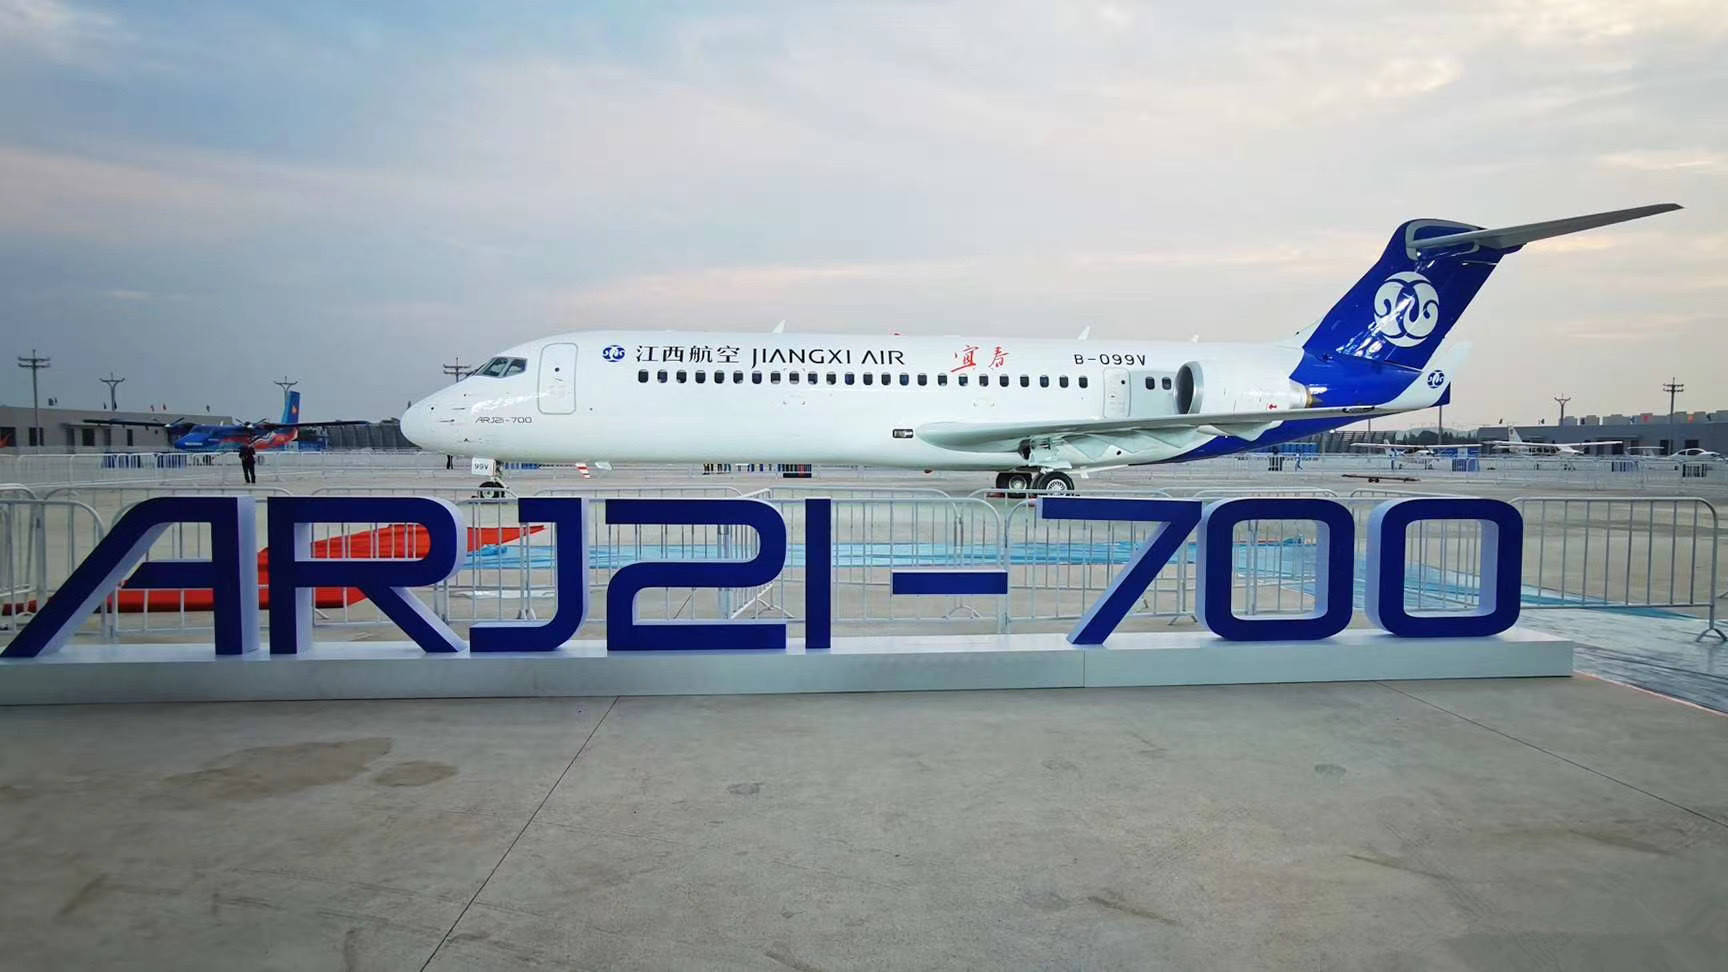 原创交付38架载客超130万人次国产arj21客机运营四年交出满意答卷